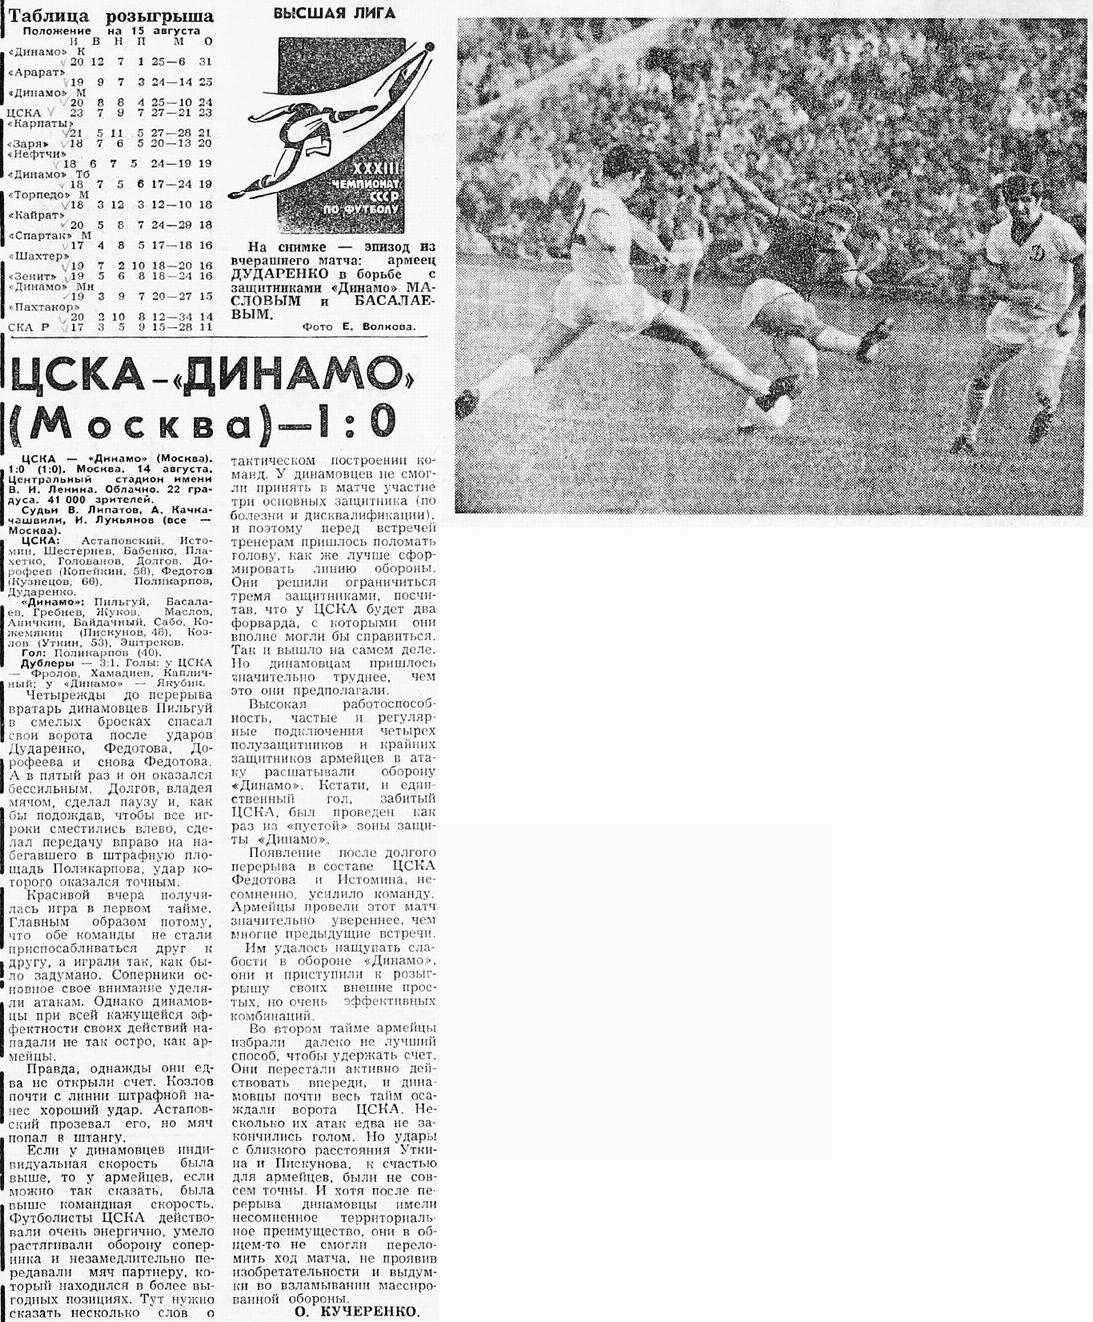 1971-08-14.CSKA-DinamoM.1